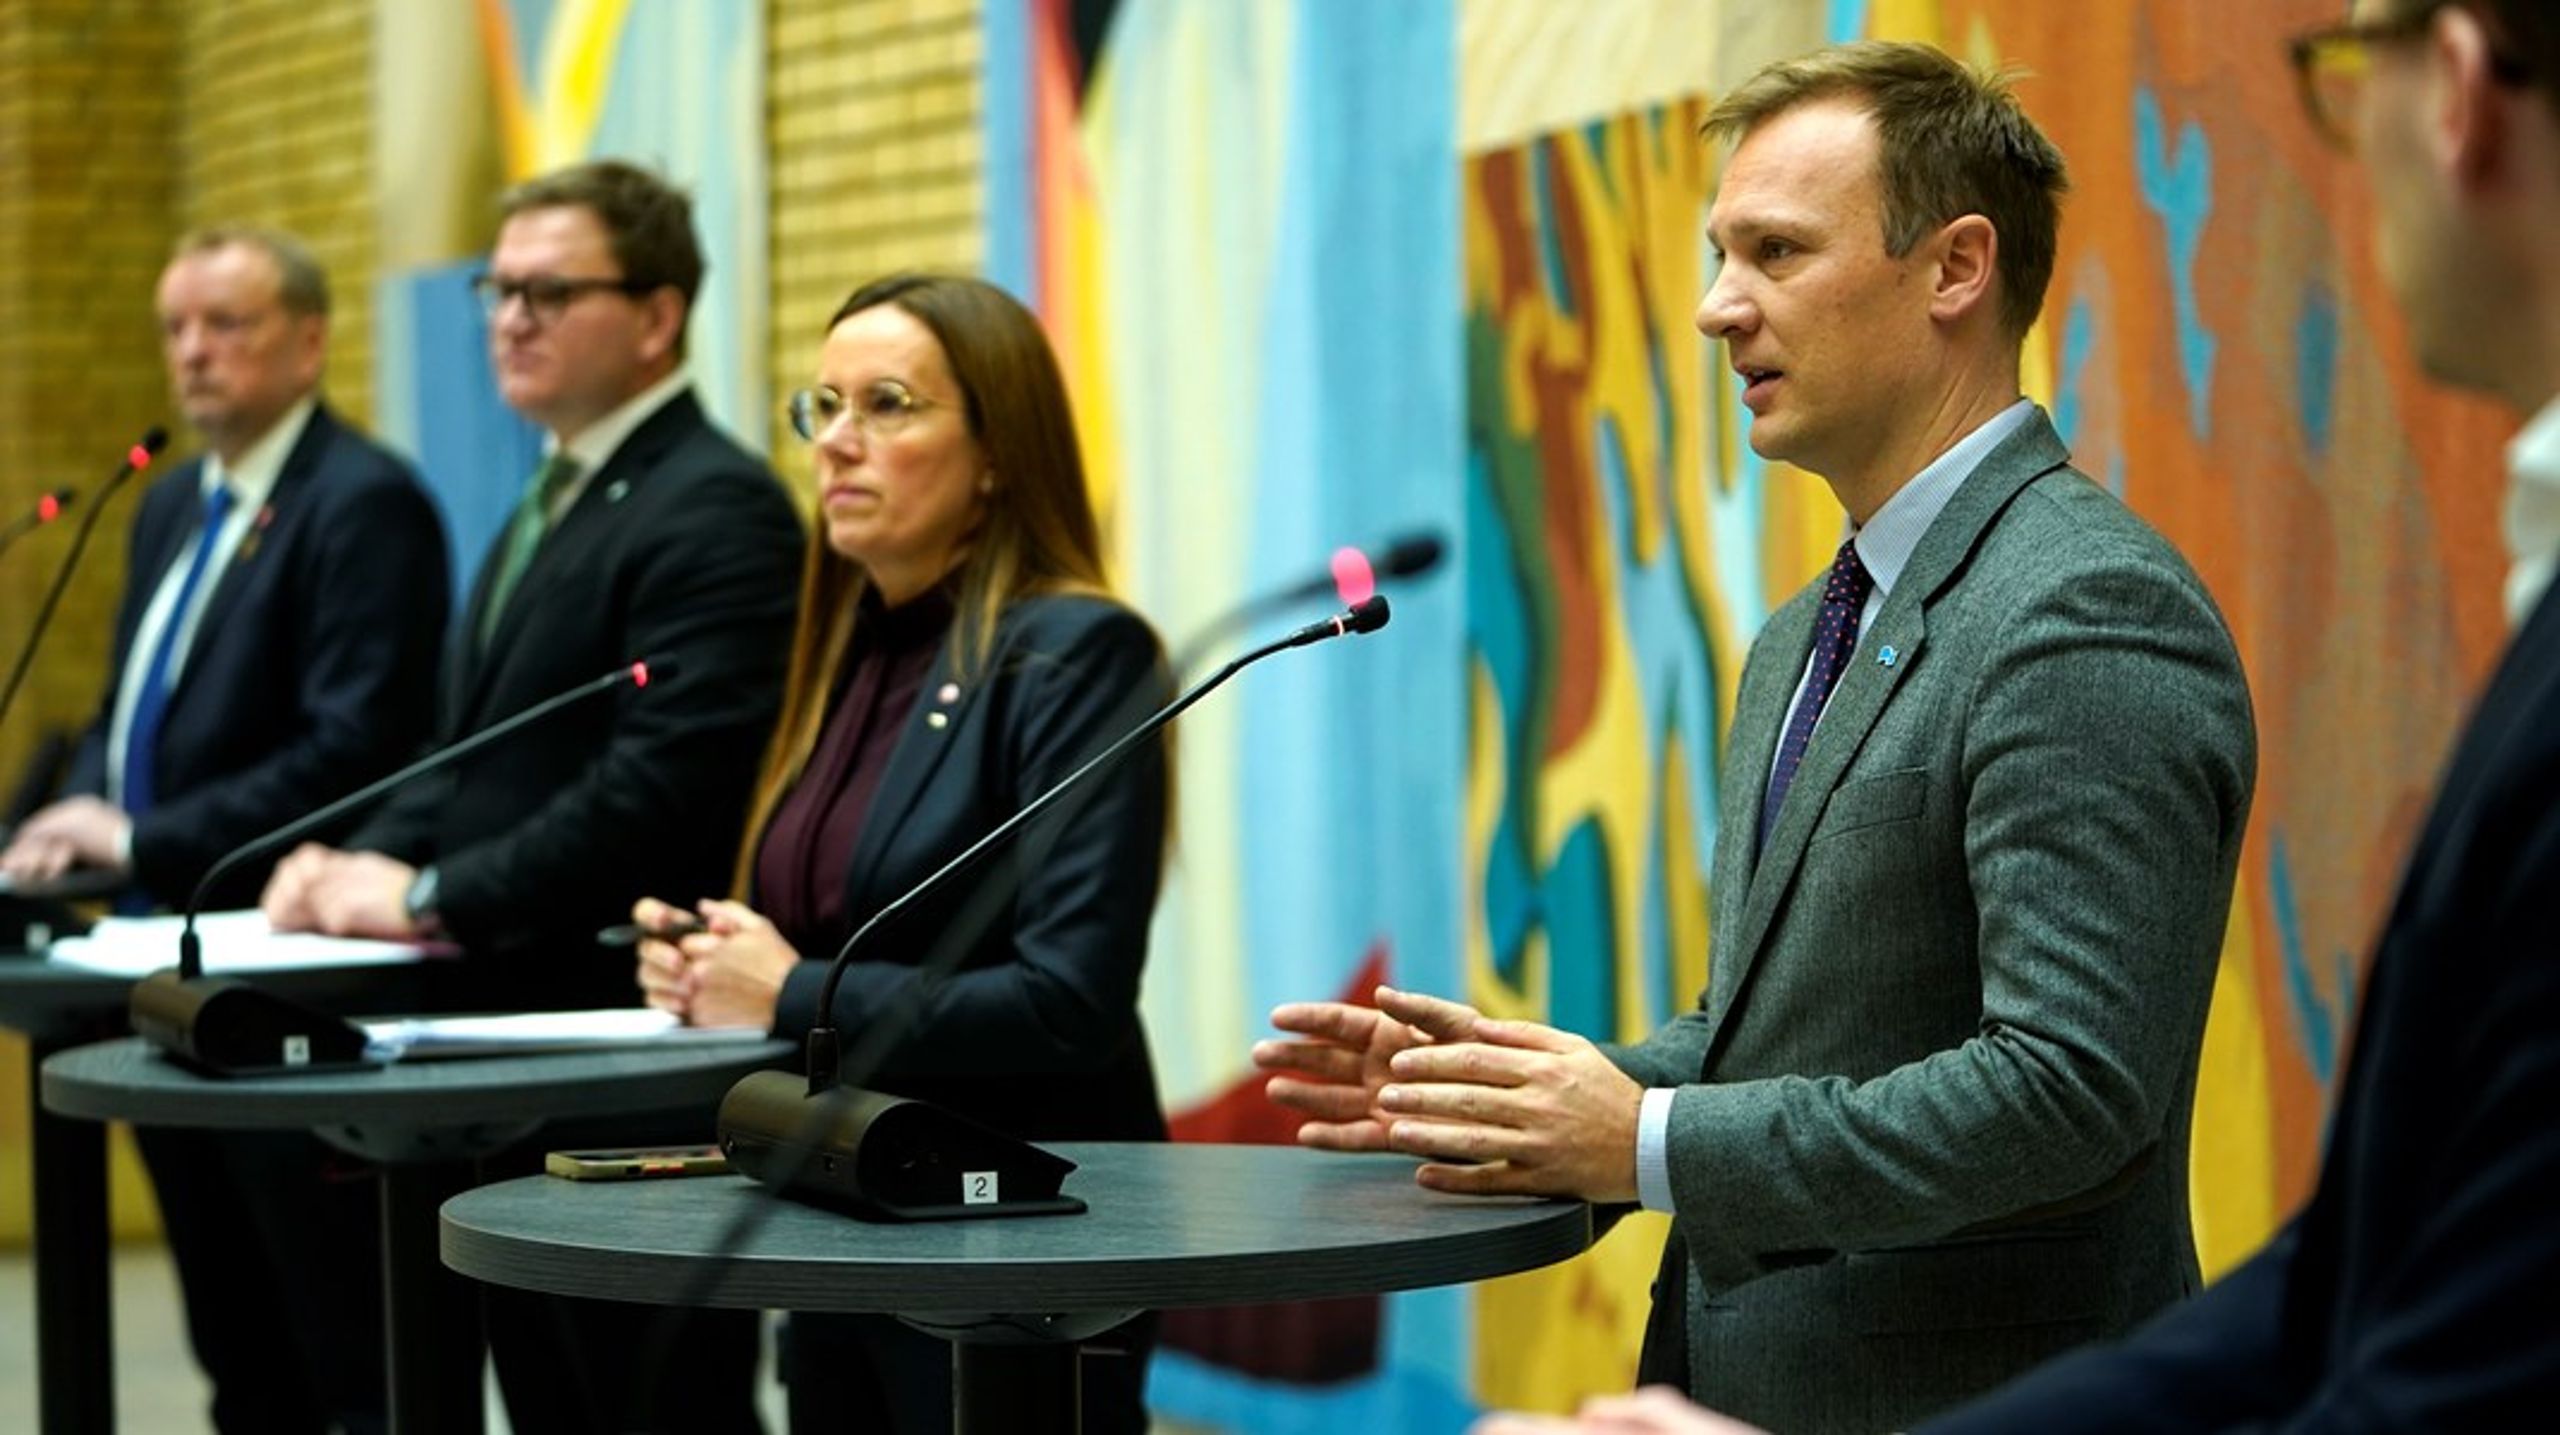 Bård Ludvig Thorheim (H), Marianne Sivertsen Næss (Ap), Aleksander Øren Heen (Sp) og Terje Halleland (Frp) presenterte de fire partienes avtale om havbunnsmineraler på Stortinget tirsdag morgen.